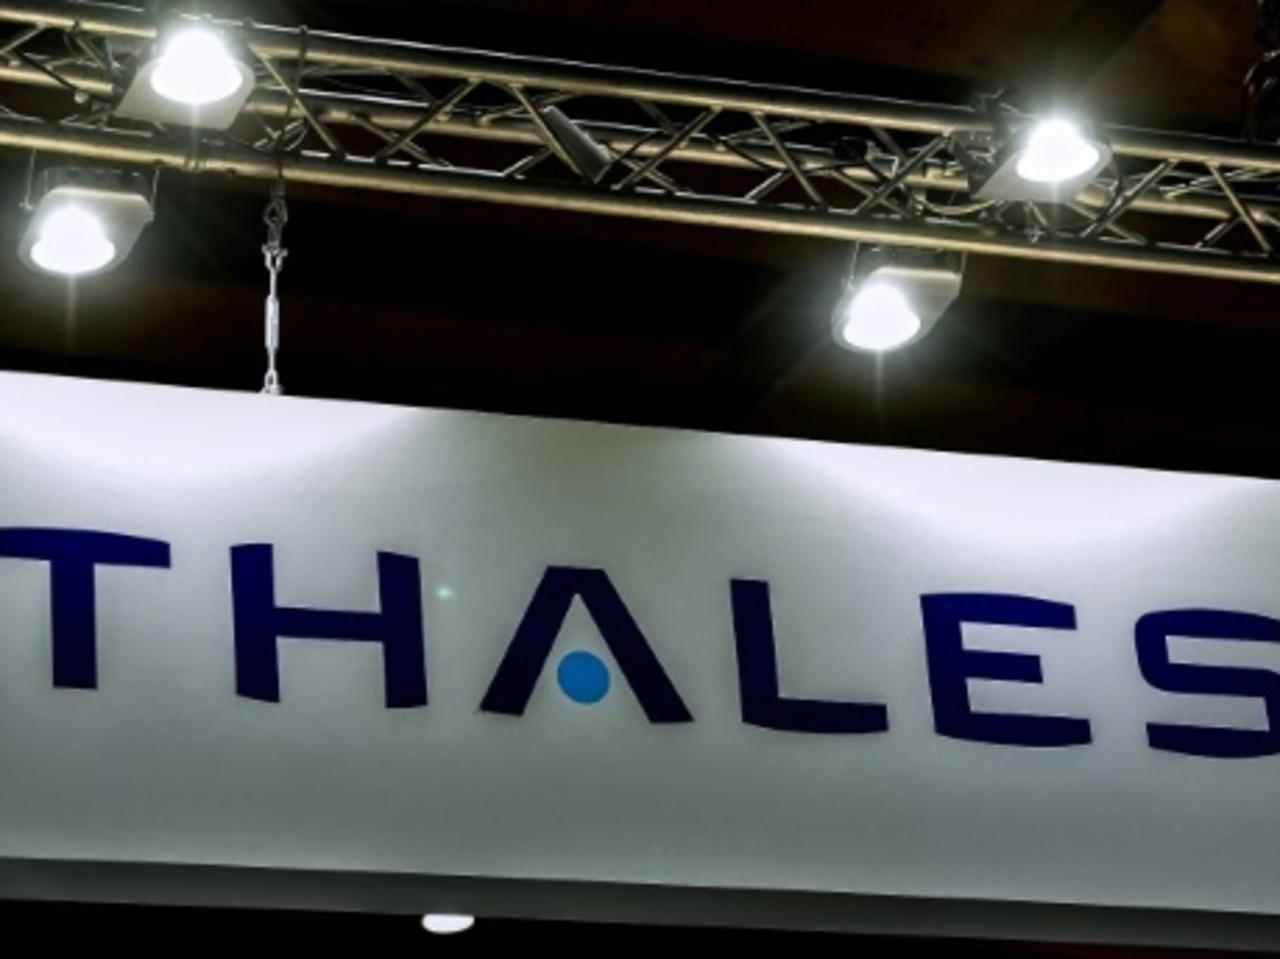 Minciencias y la empresa Thales, firmaron un memorando de entendimiento con el fin de impulsar el desarrollo aeroespacial del país